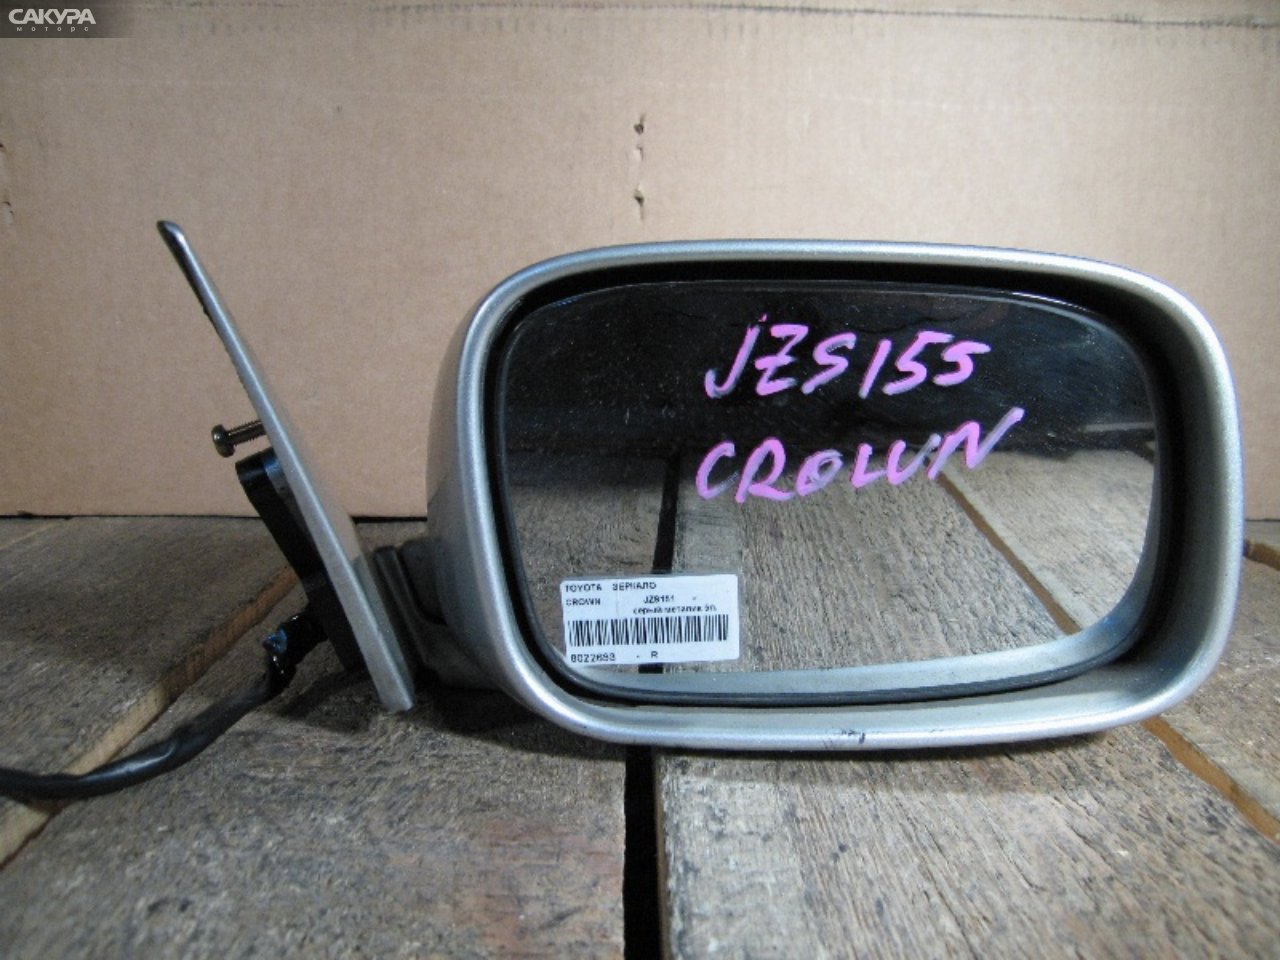 Зеркало боковое правое Toyota Crown JZS151: купить в Сакура Абакан.